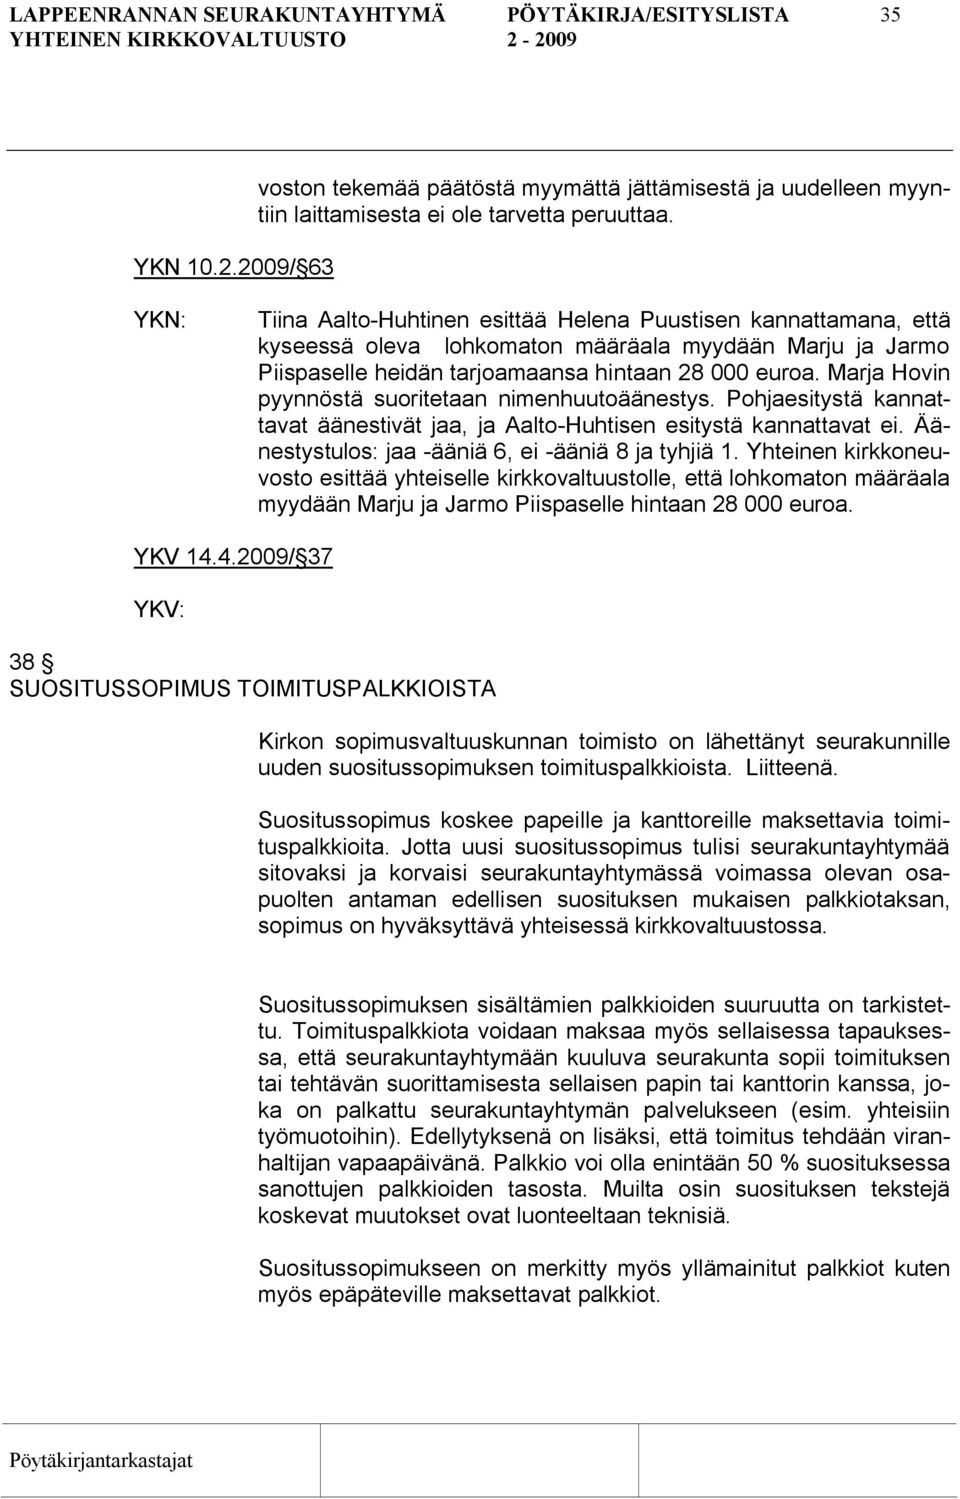 Marja Hovin pyynnöstä suoritetaan nimenhuutoäänestys. Pohjaesitystä kannattavat äänestivät jaa, ja Aalto Huhtisen esitystä kannattavat ei. Äänestystulos: jaa ääniä 6, ei ääniä 8 ja tyhjiä 1.